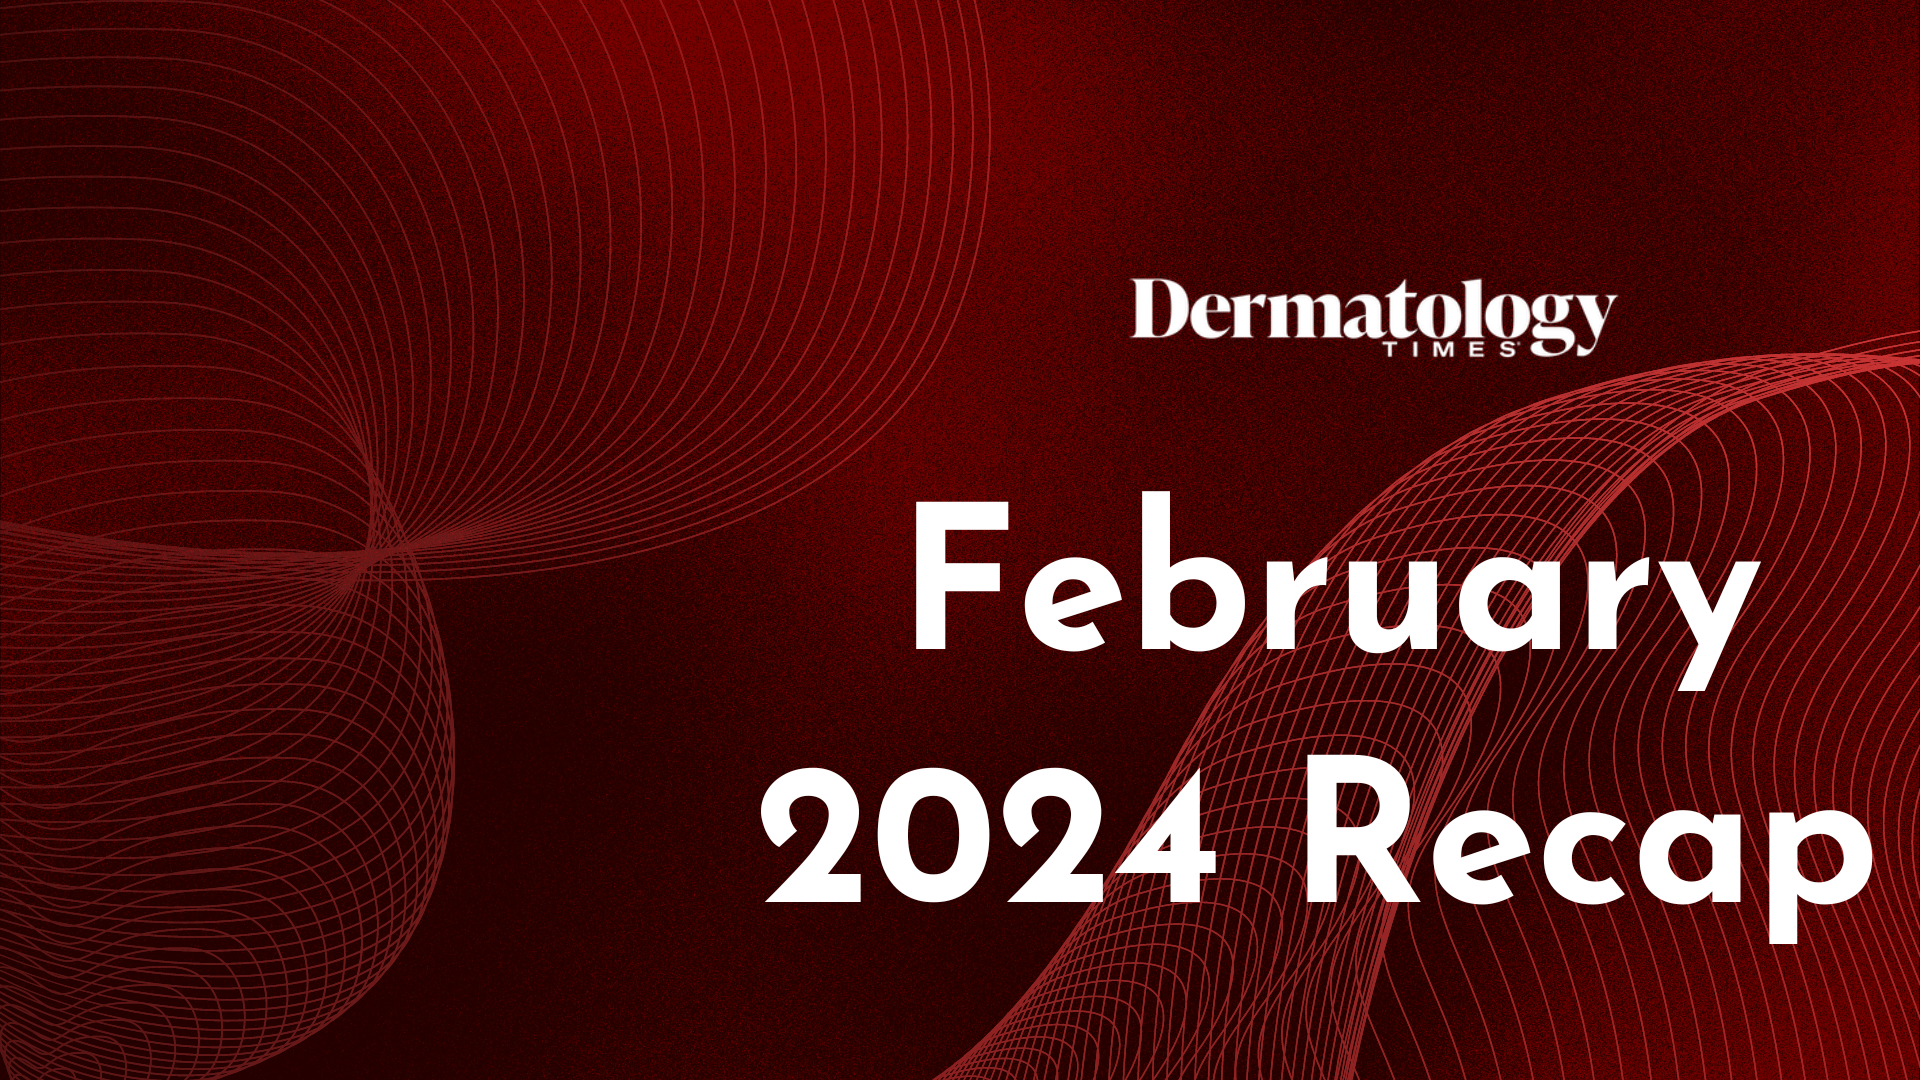 Dermatology Times February 2024 Recap